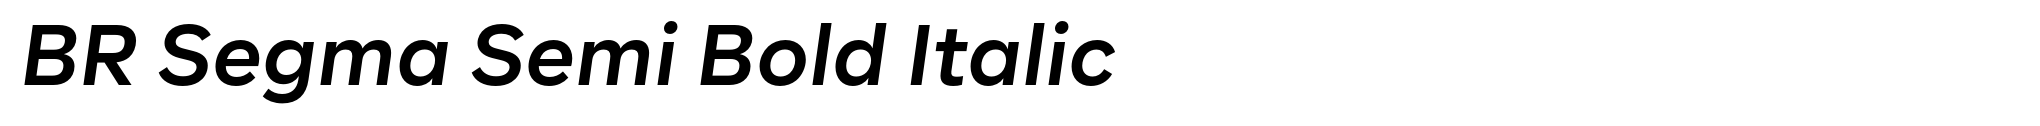 BR Segma Semi Bold Italic image